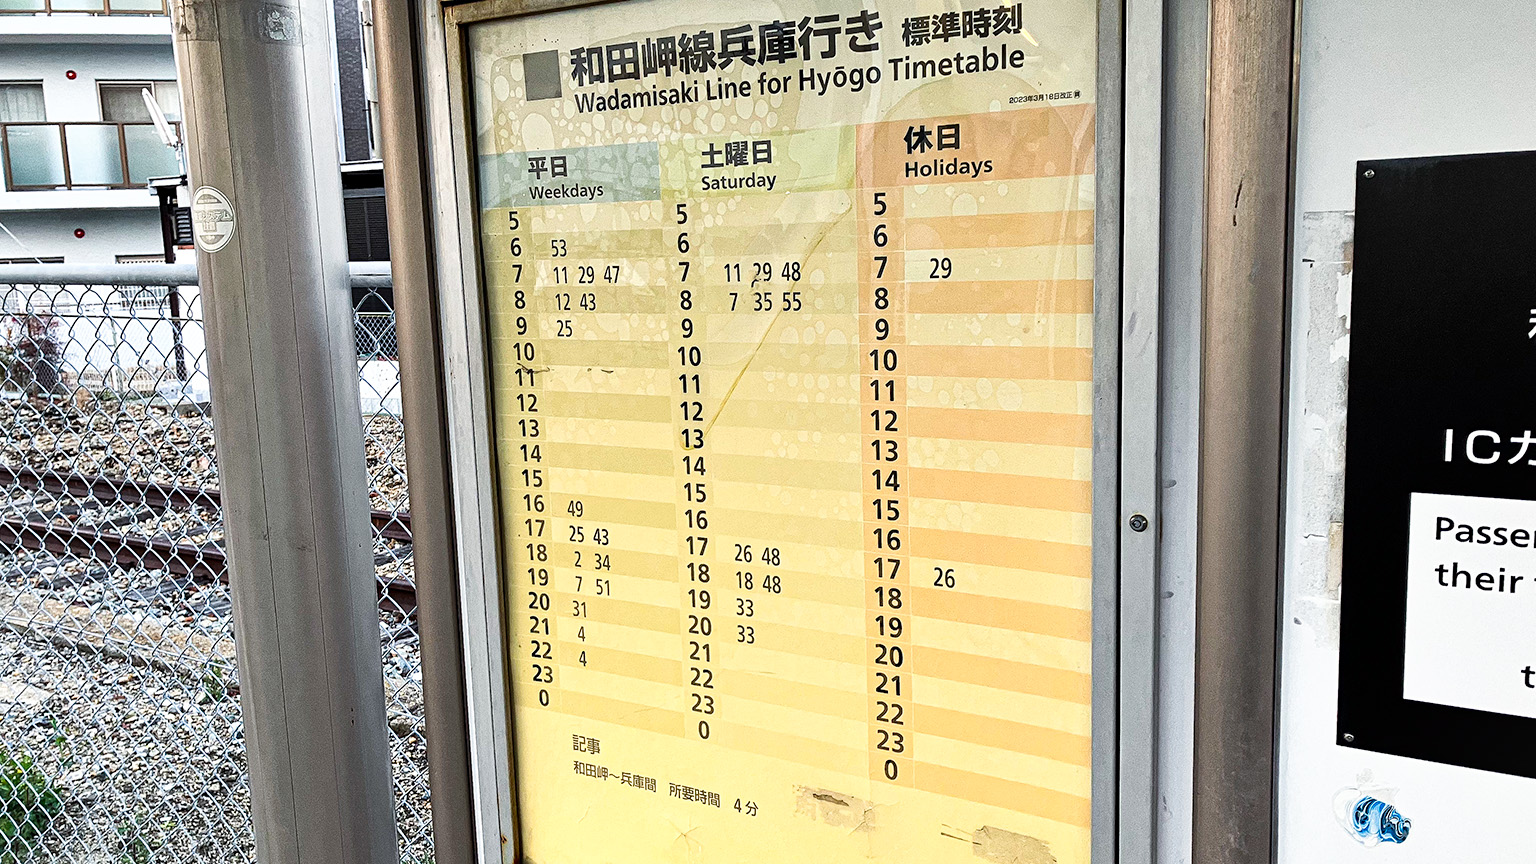 和田岬線の時刻表の写真